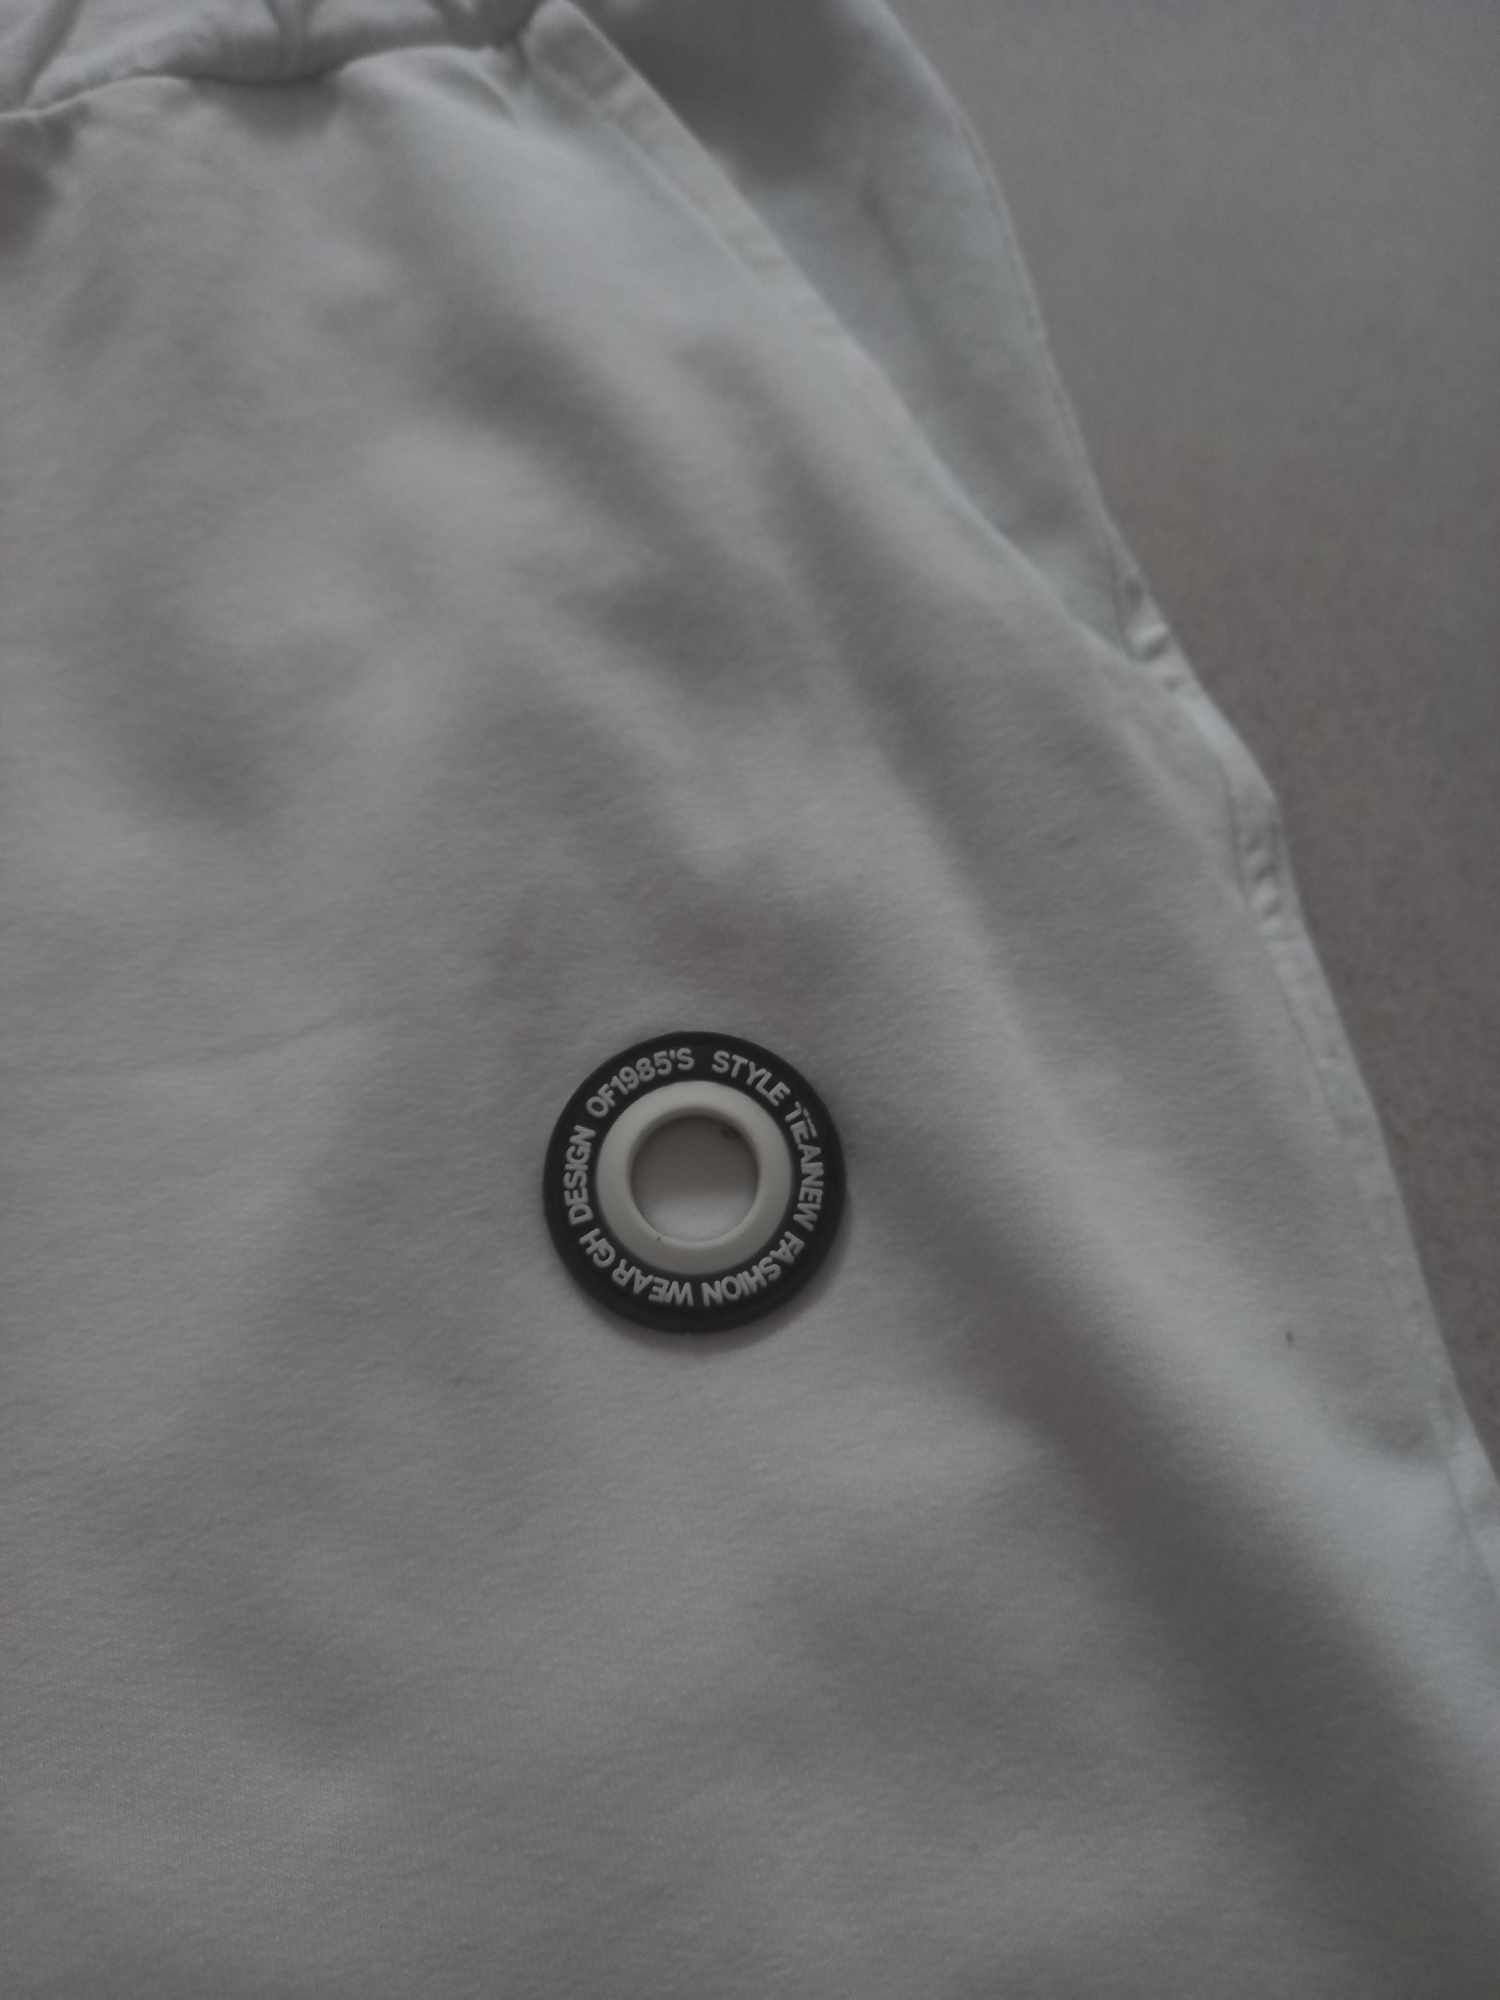 Spodnie dresowe damskie bawełniane białe rozmiar S-M